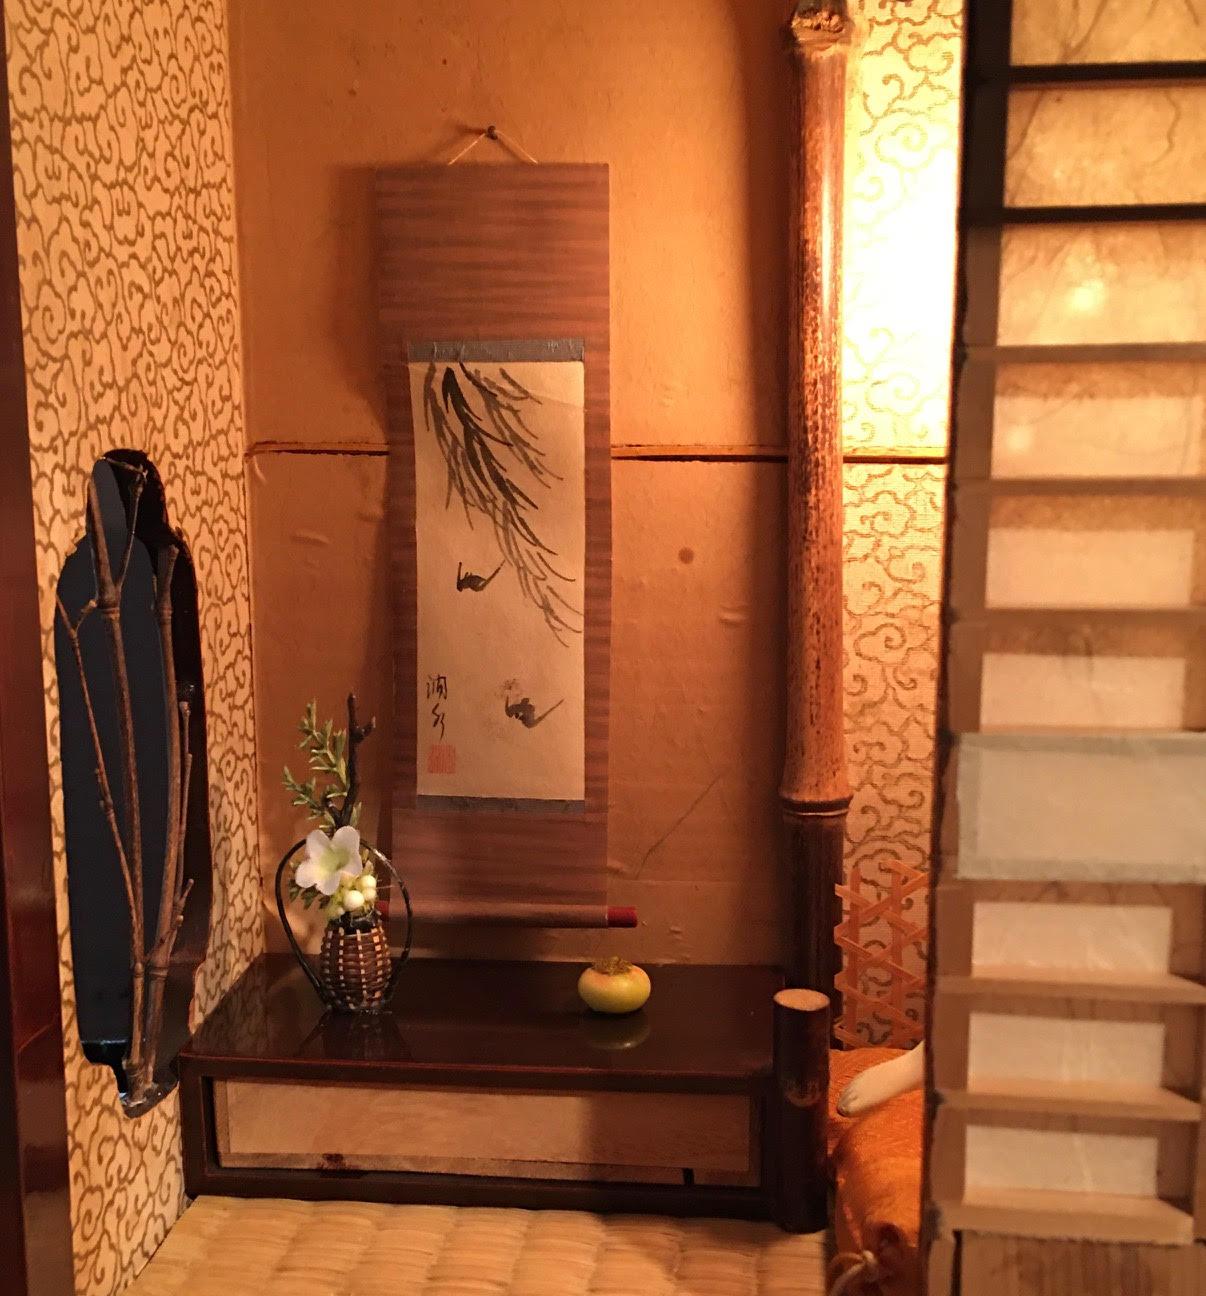 Japanische Shunga in einem Teehaus. Äußerst seltenes Meisterwerk in der Kategorie Shunga (erotische Kunst) Das Teehaus ist mit wunderschönen Lackarbeiten, Shoji-Schirmen und Fenstern perfekt gearbeitet. Es verfügt über ein Tokonoma, das eine